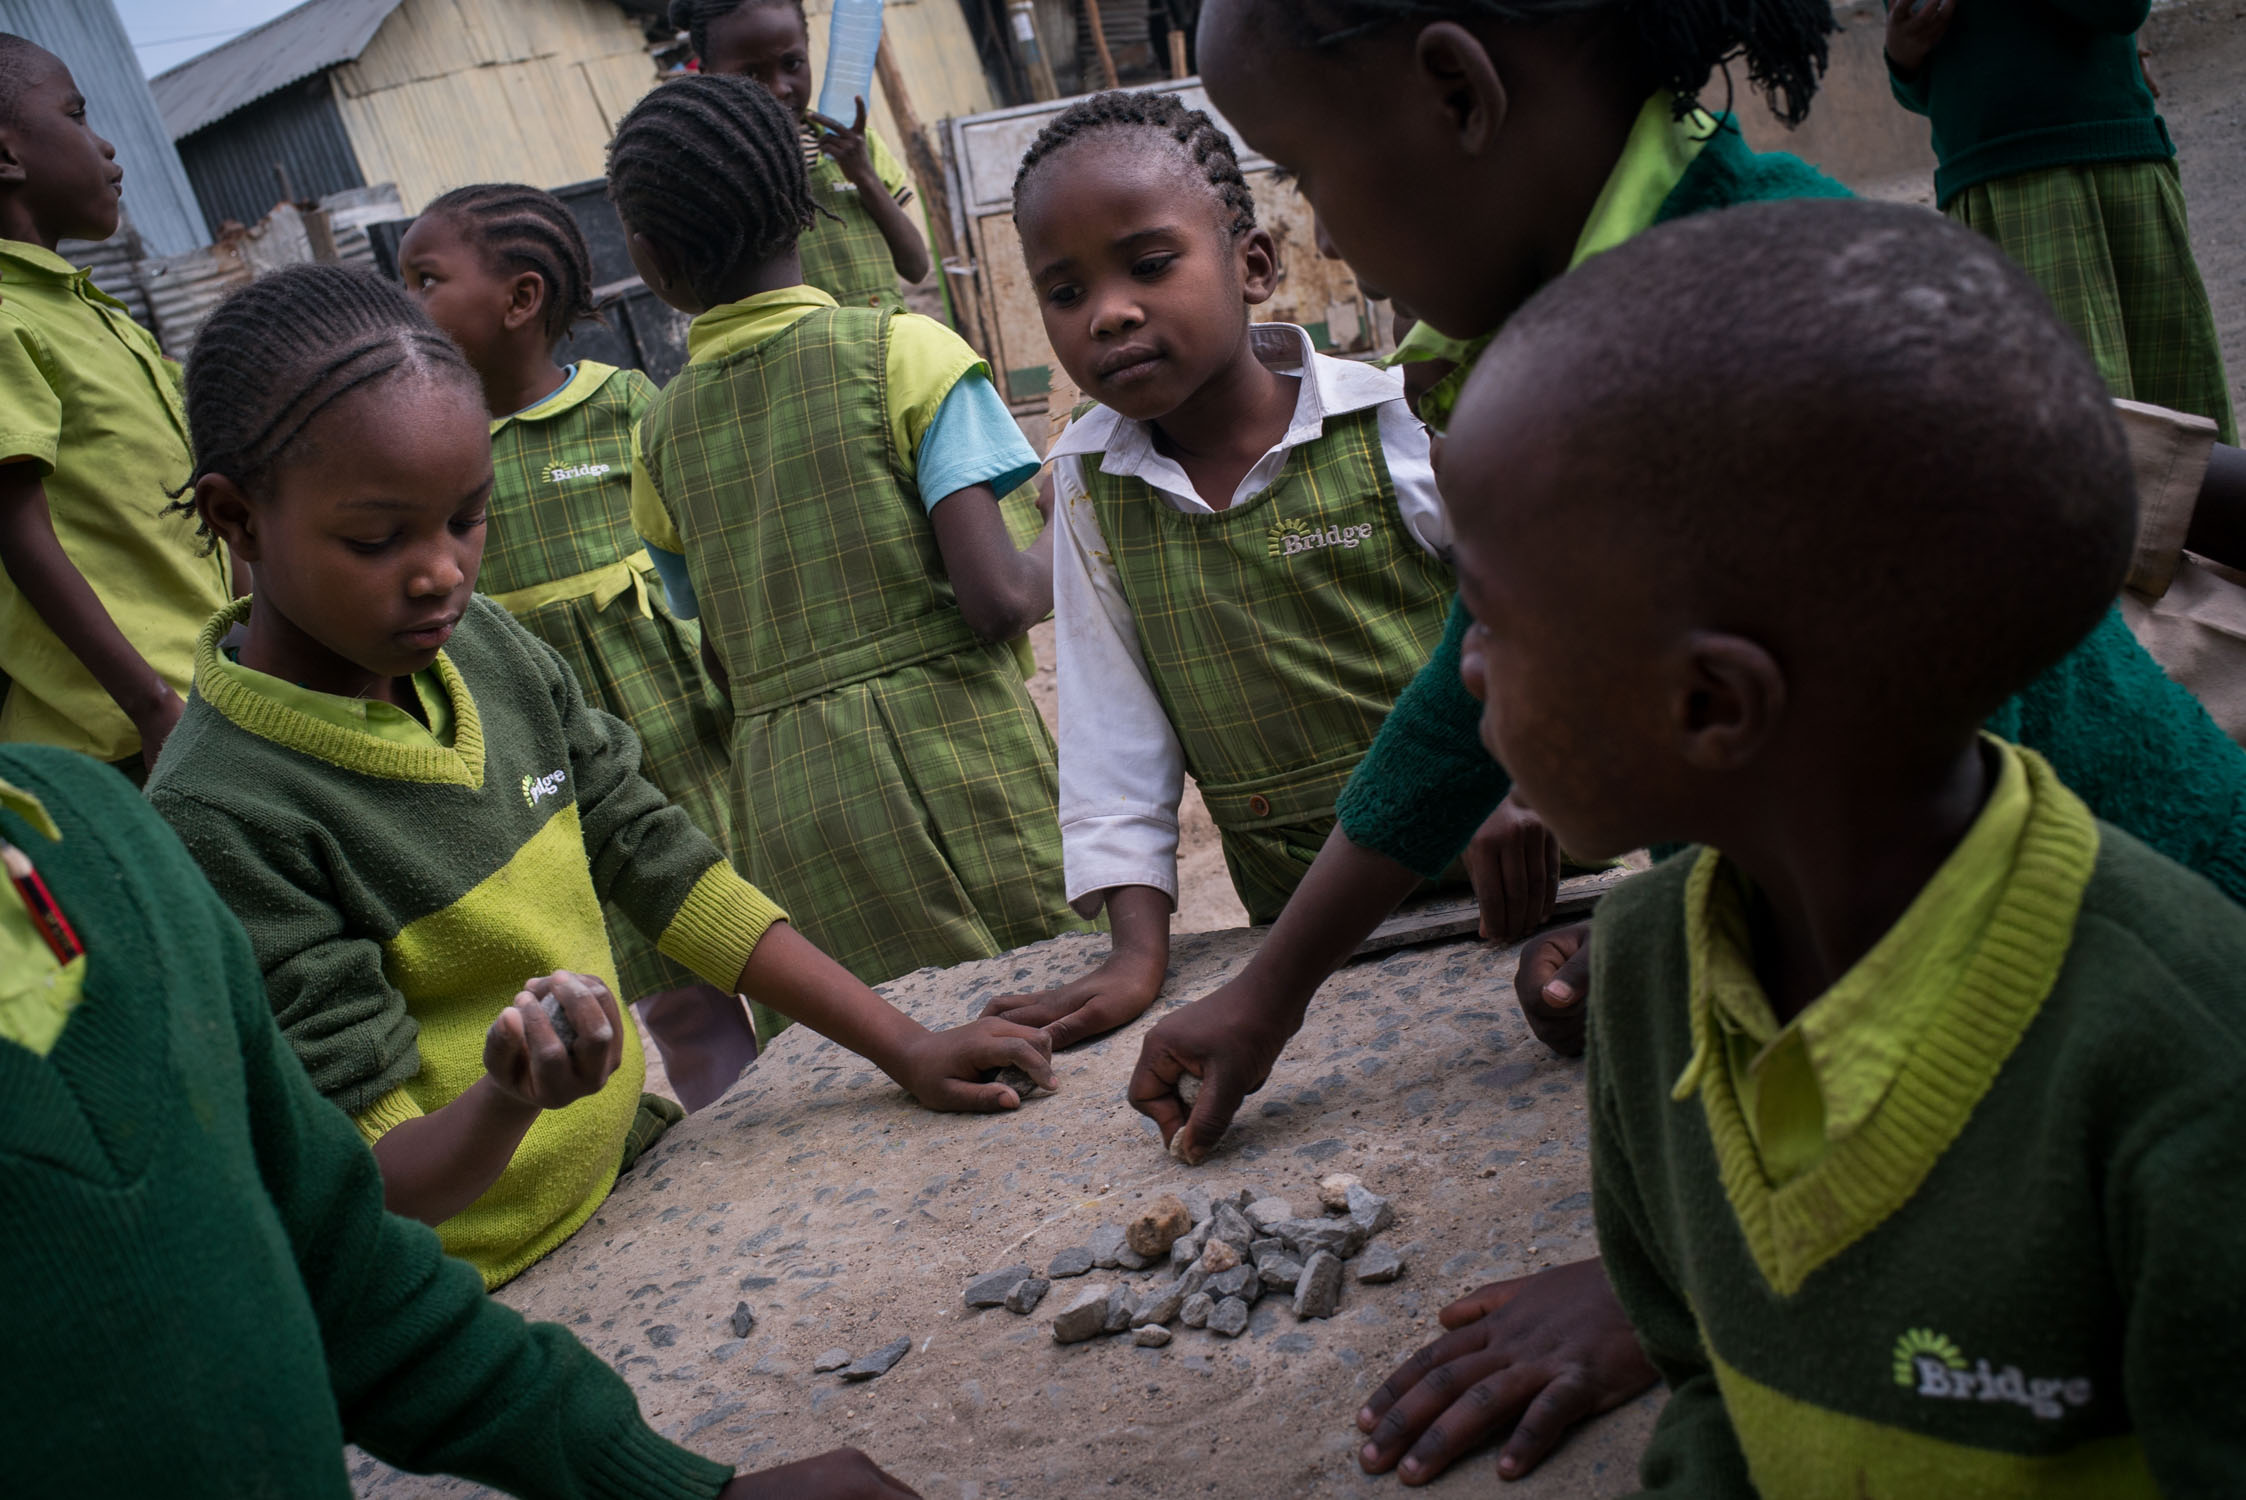  Students with small stones in the yard of a Bridge school in Mukuru slum. September 20, 2016. Mukuru, Nairobi, Kenya.&nbsp; 